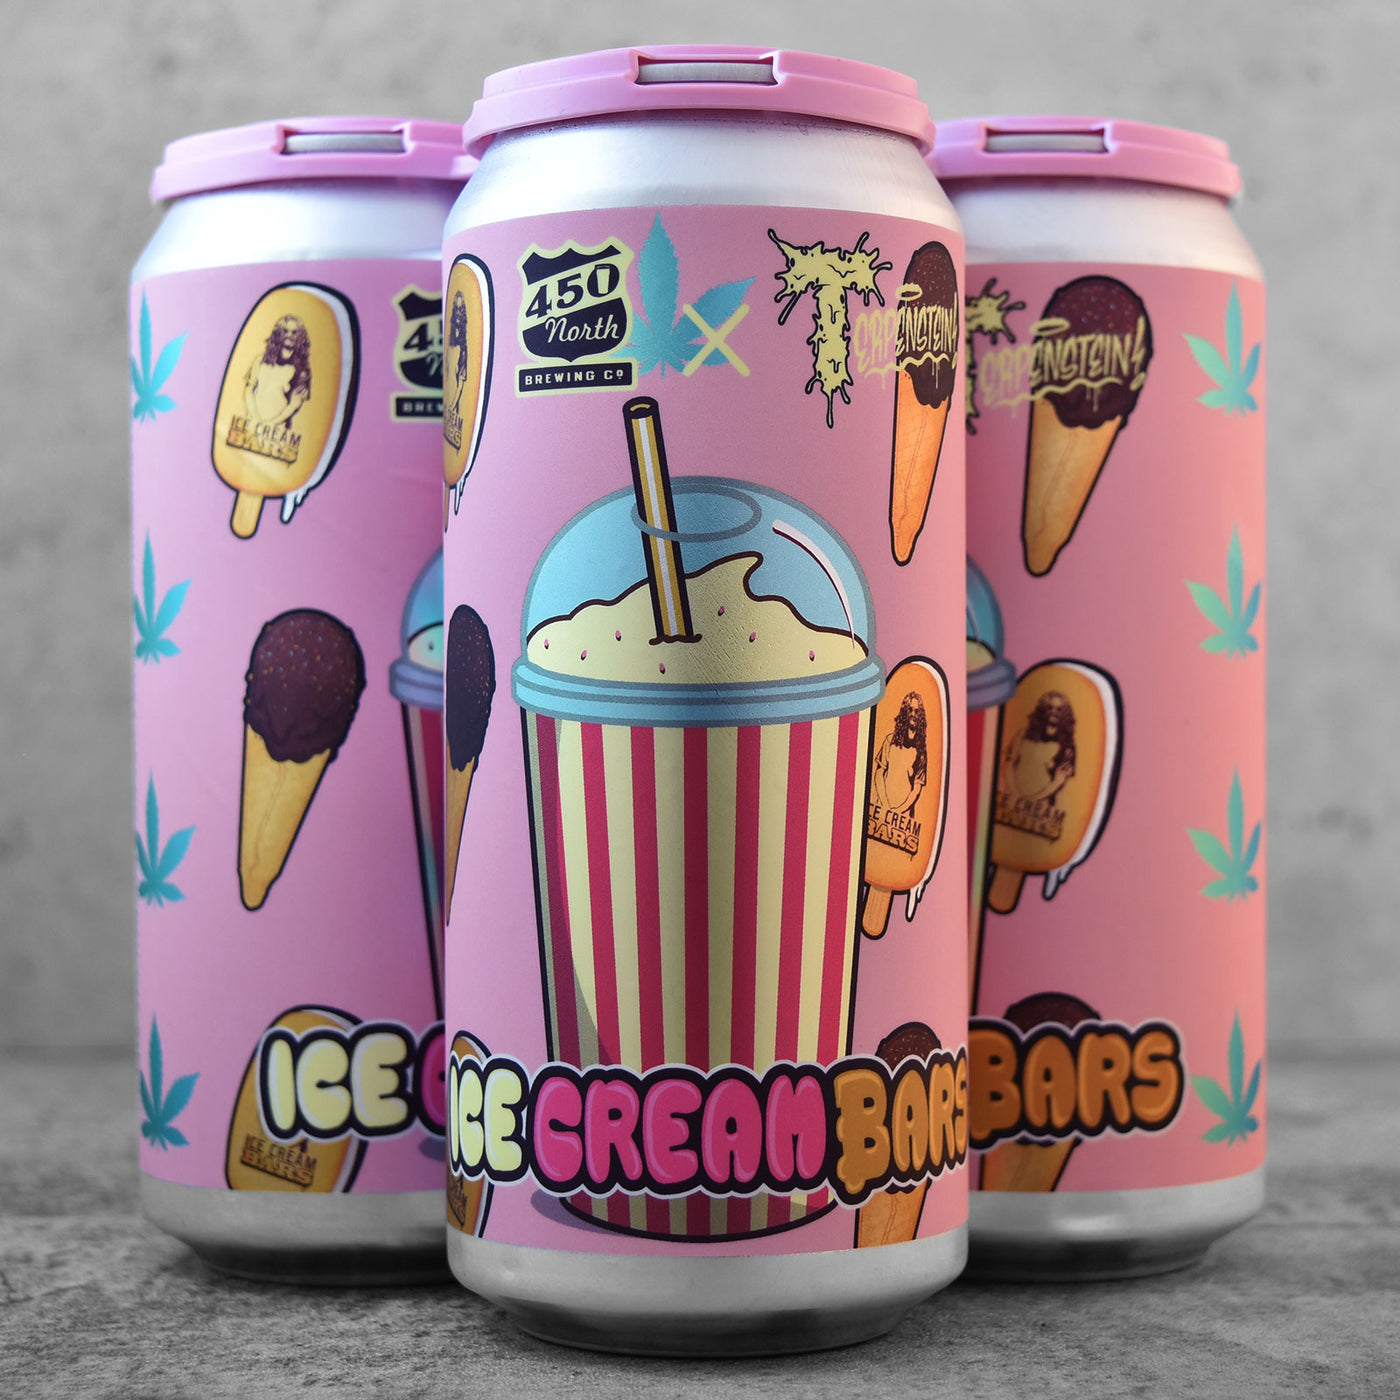 450 North Ice Cream Bars Slushy XL